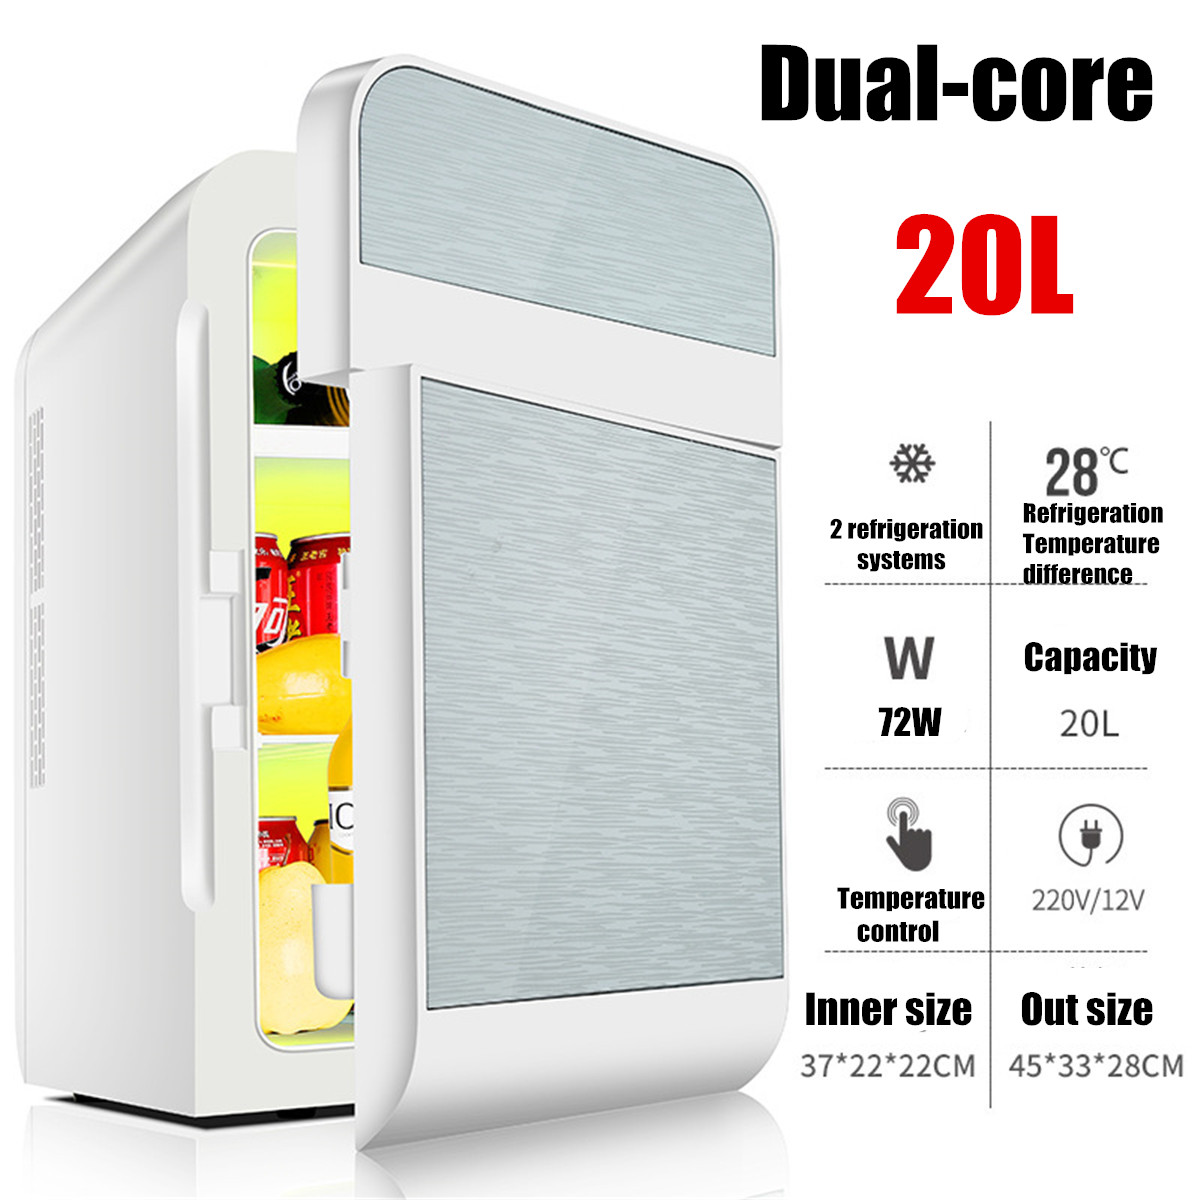 20L Single Dual-core Car Mini Fridge Travel Cool & Warmer Home Refrigerator 220V/12V 9